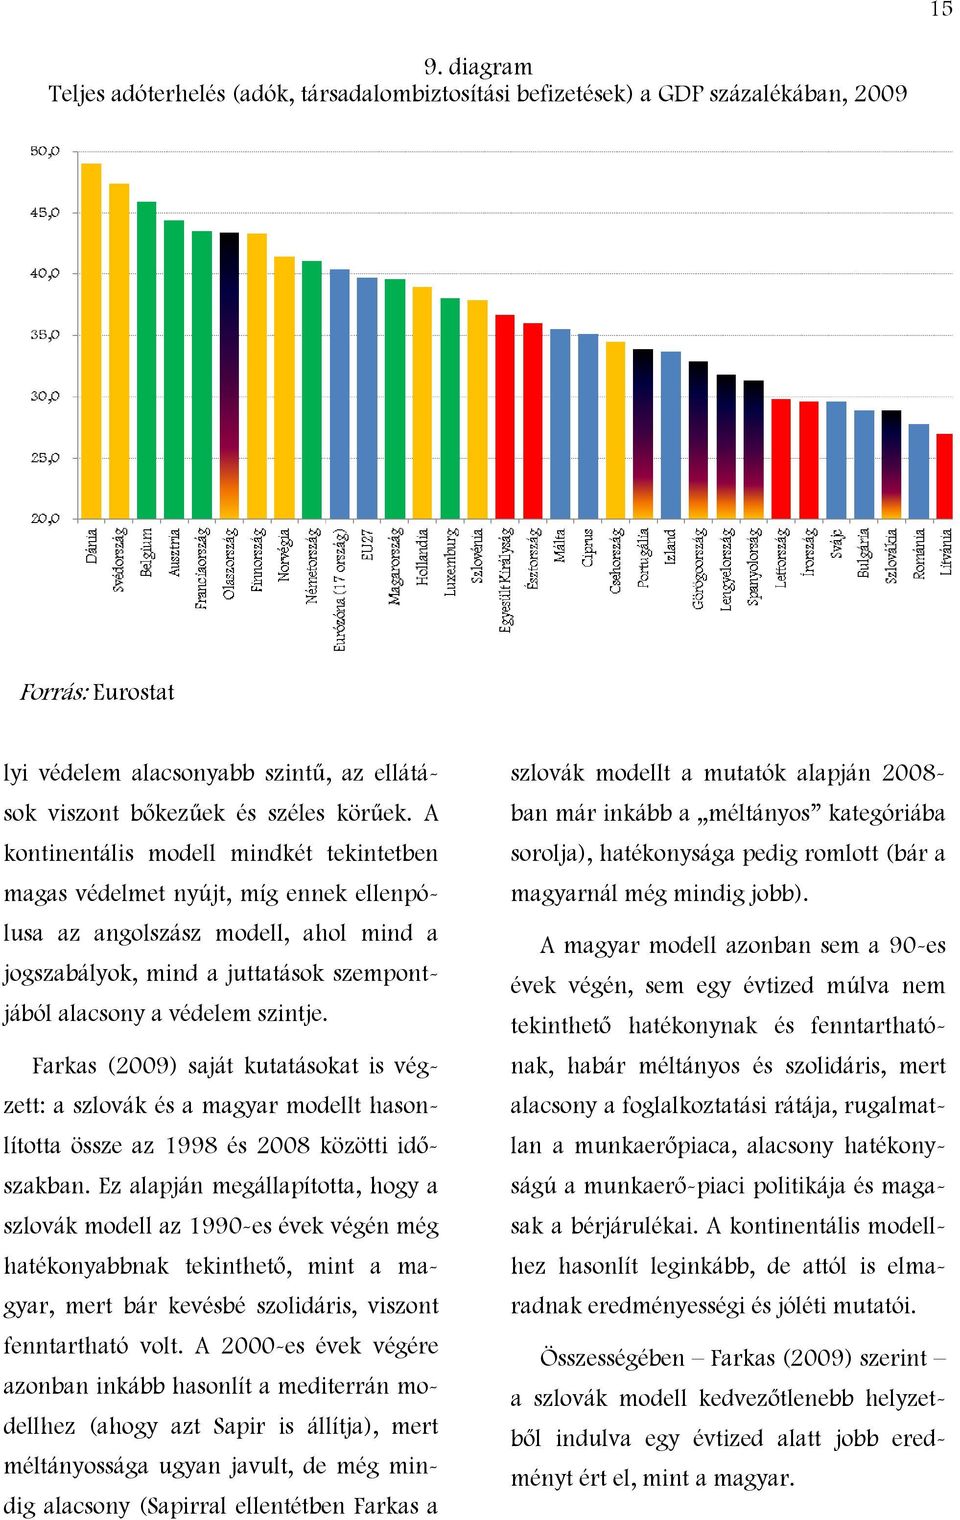 Farkas (2009) saját kutatásokat is végzett: a szlovák és a magyar modellt hasonlította össze az 1998 és 2008 közötti időszakban.